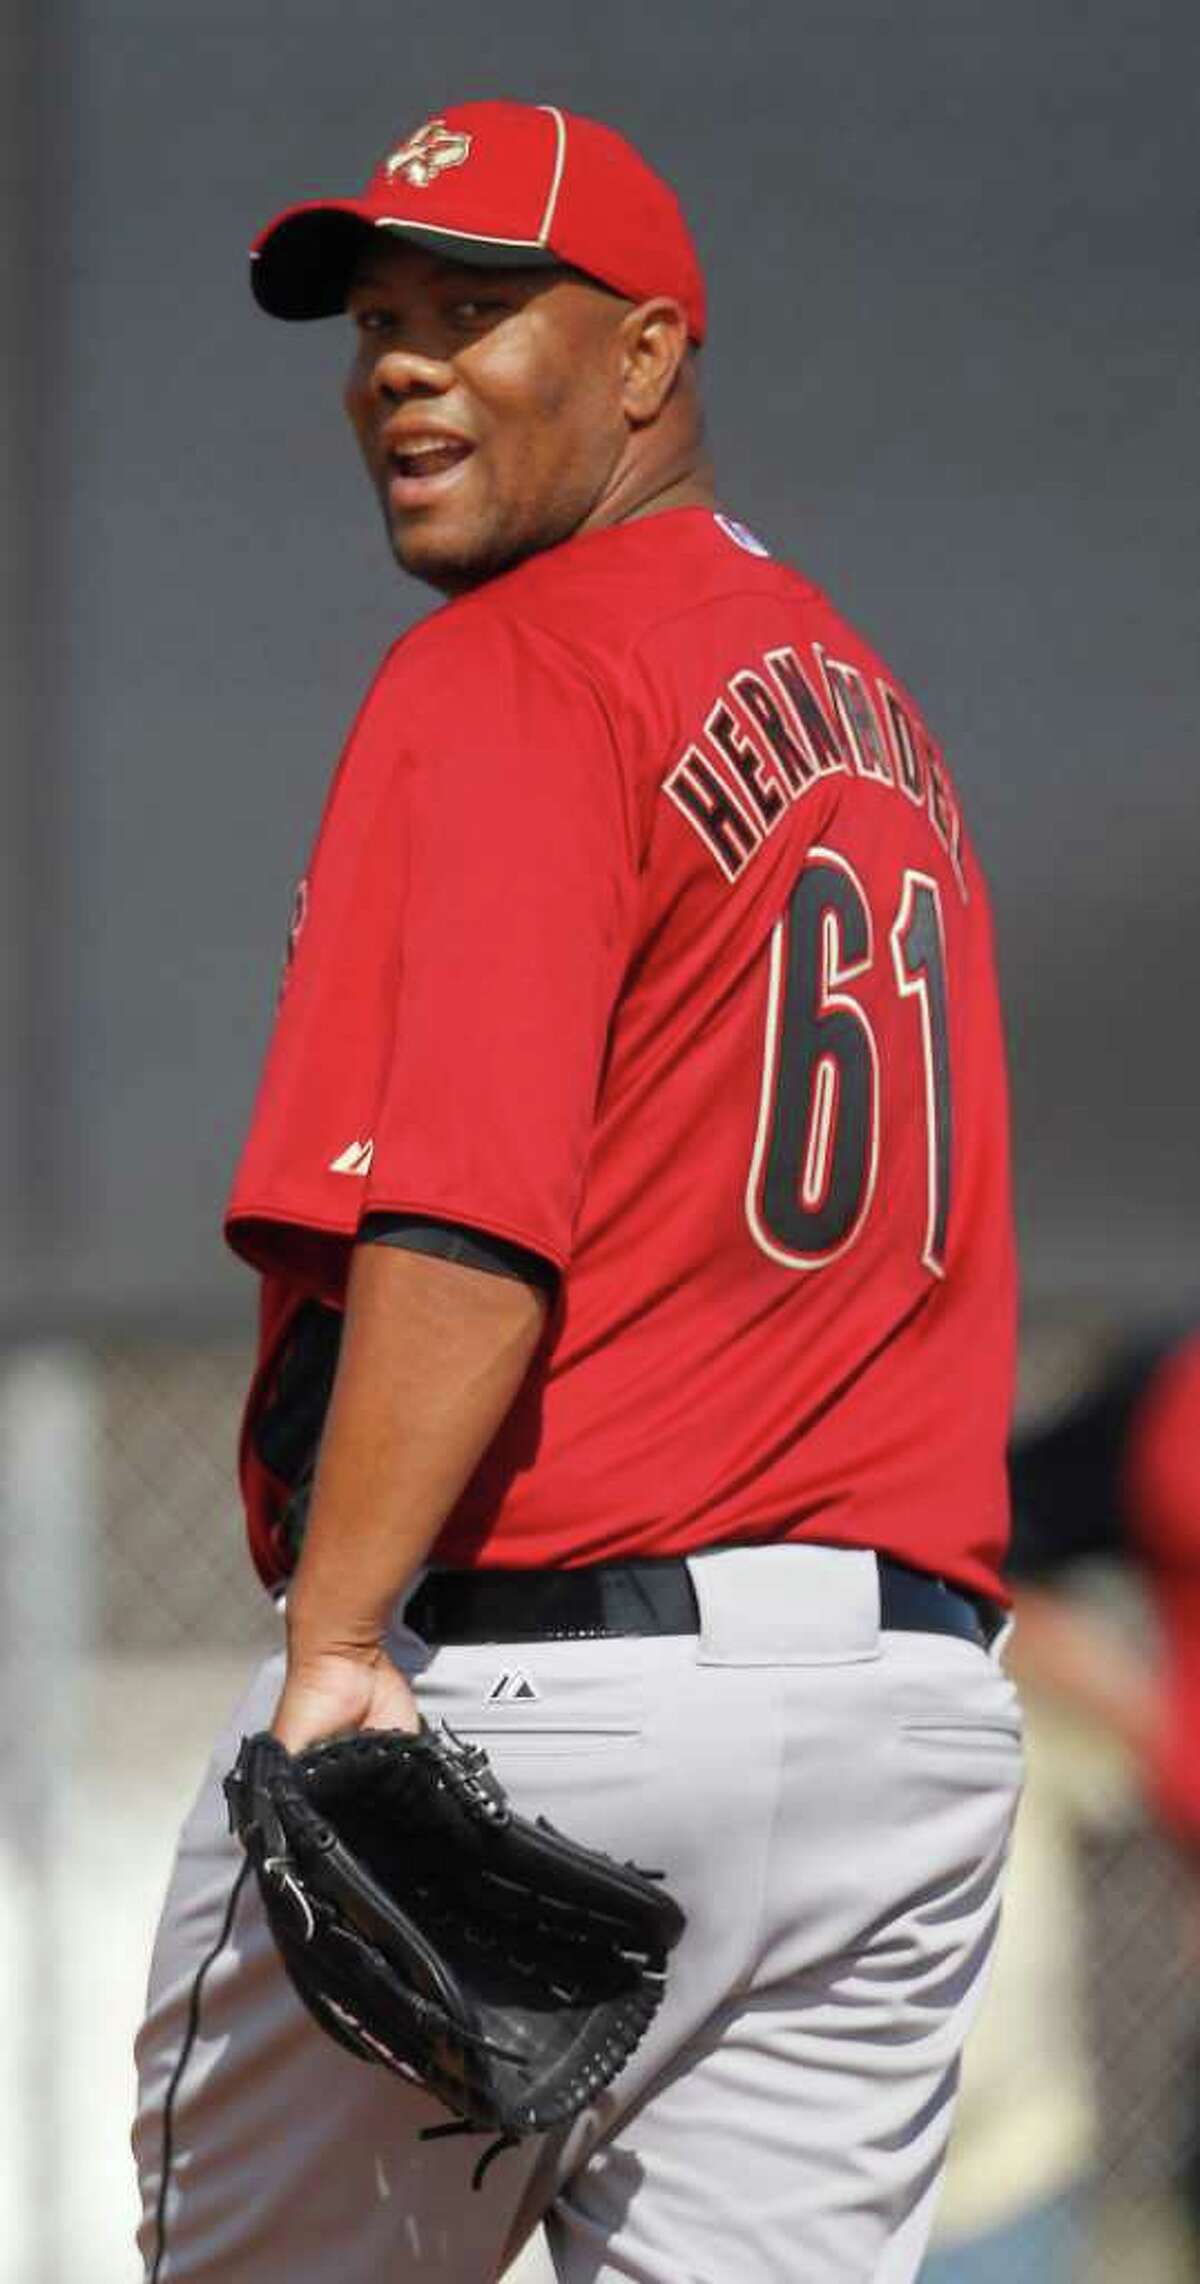 Hernandez brings veteran savvy to Astros' staff